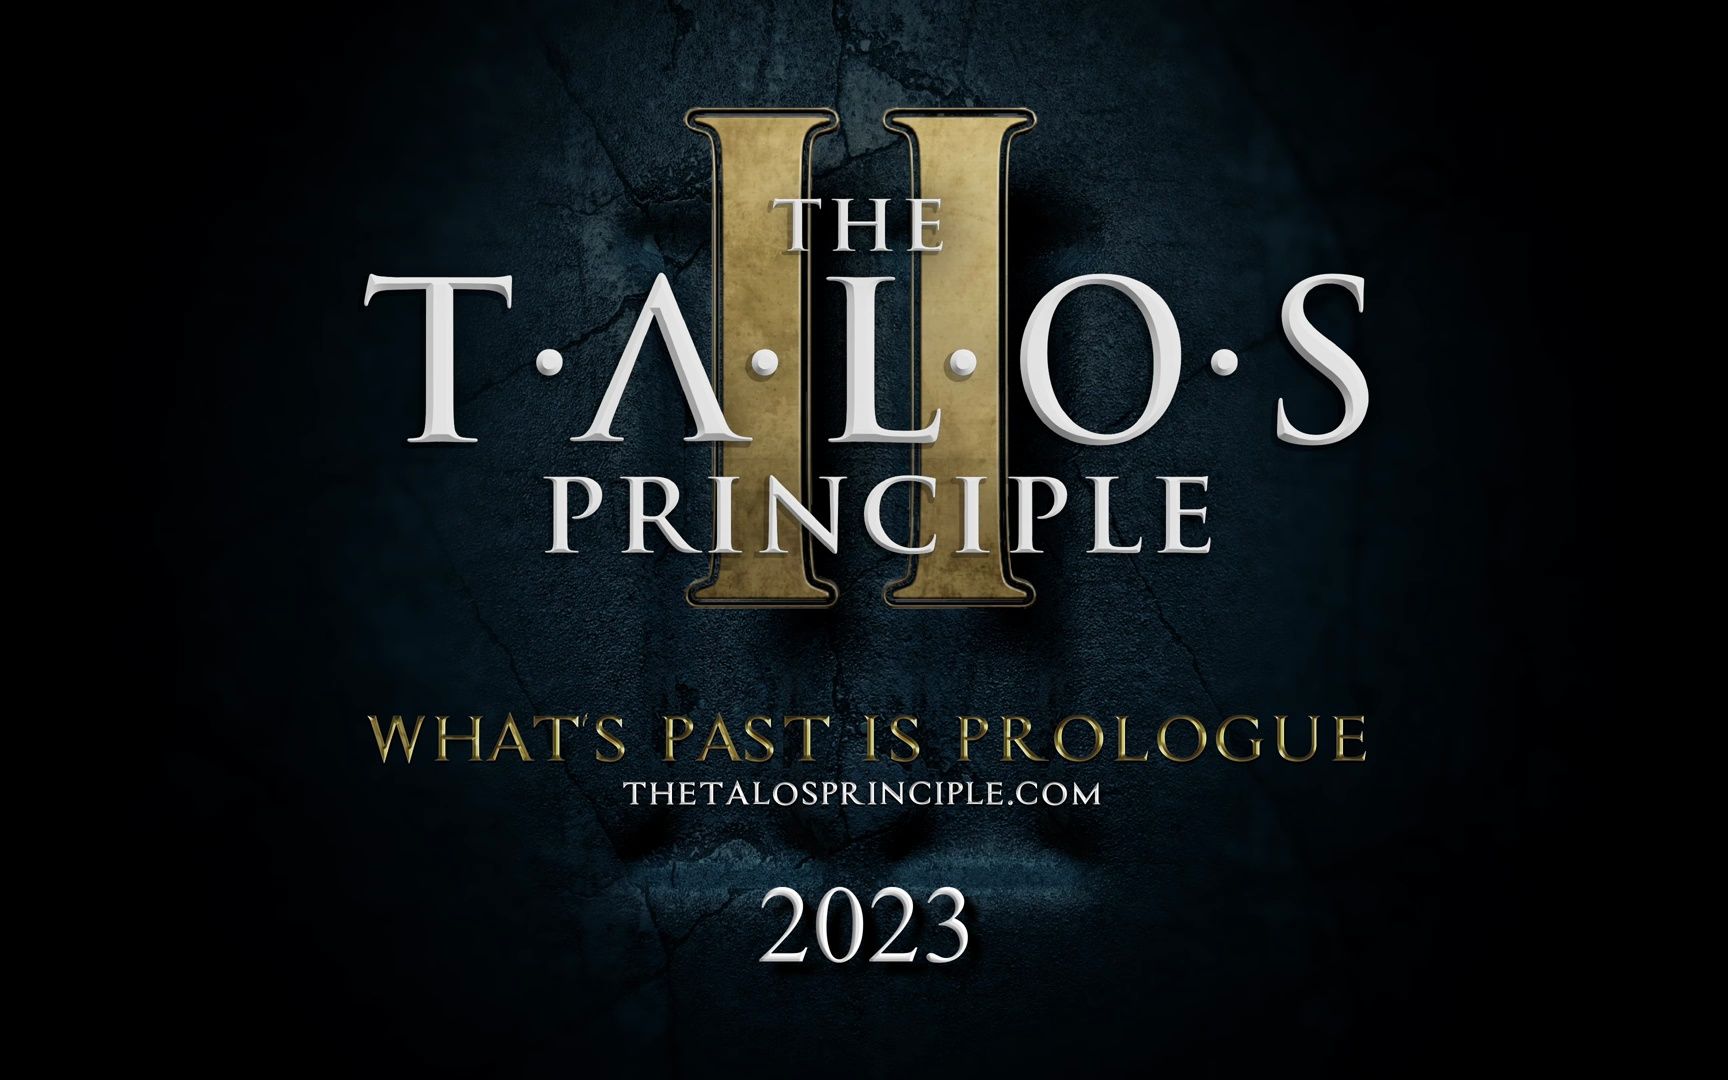 第一人称解谜游戏《塔罗斯的法则2》将于2023年登陆PS5